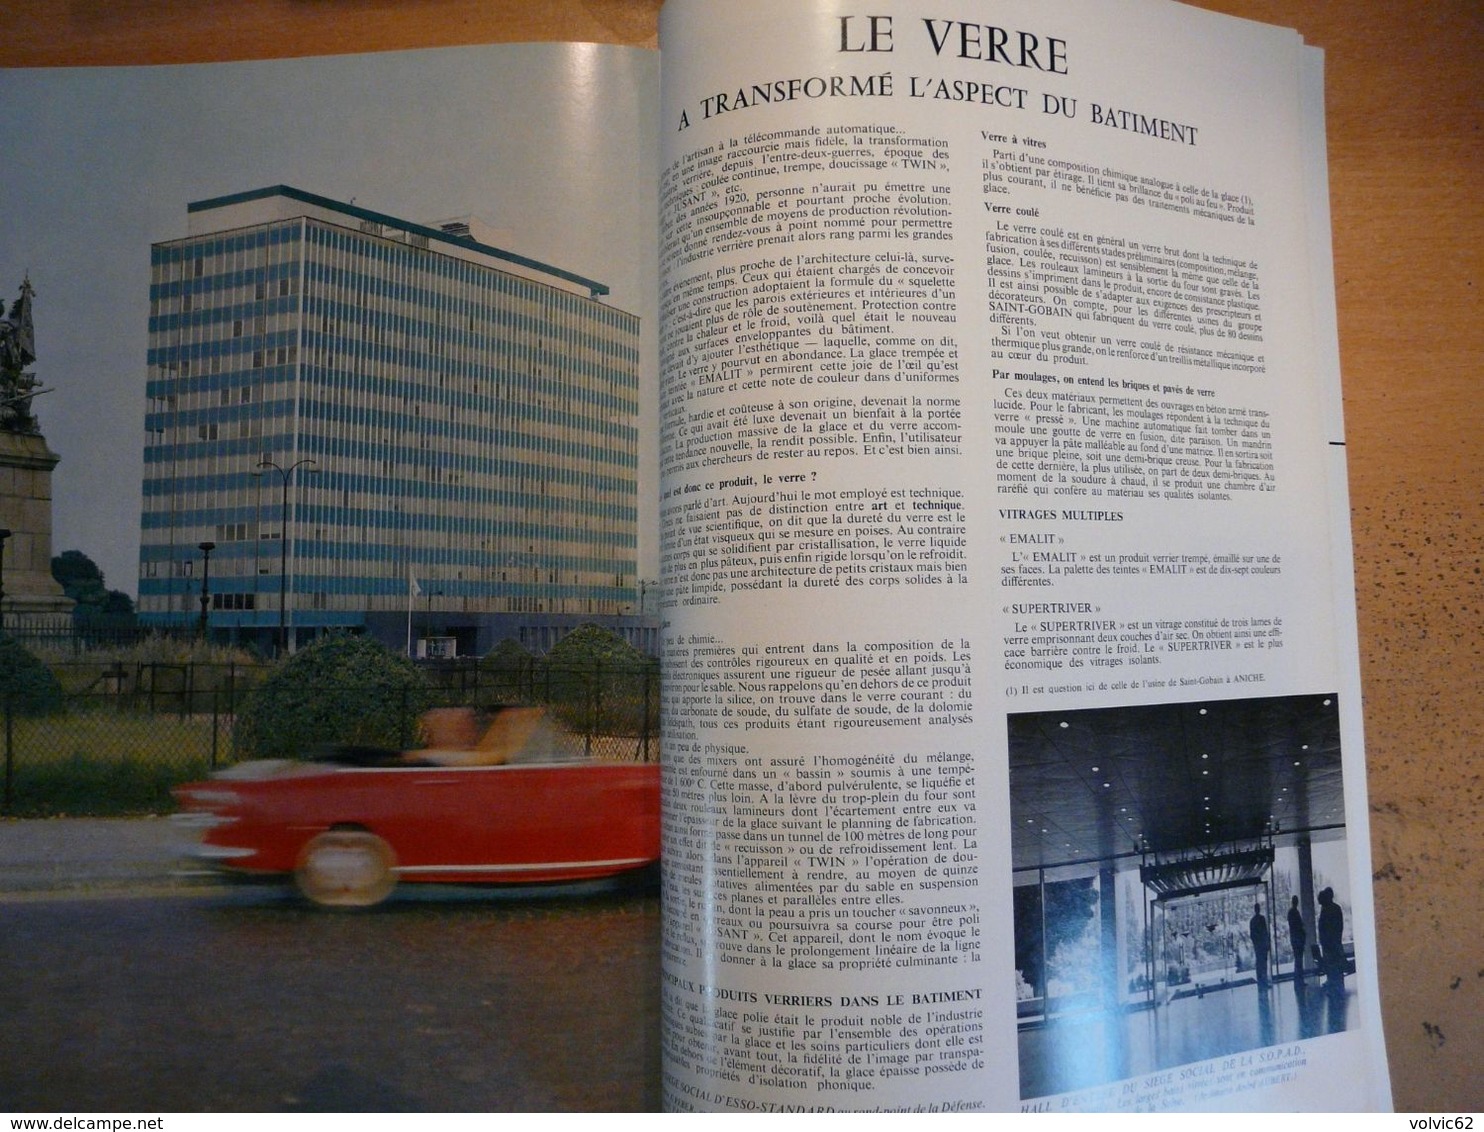 Plaisir de france 1965 Montparnasse neuilly faculté de médecine Auvers sur oise saint cloud